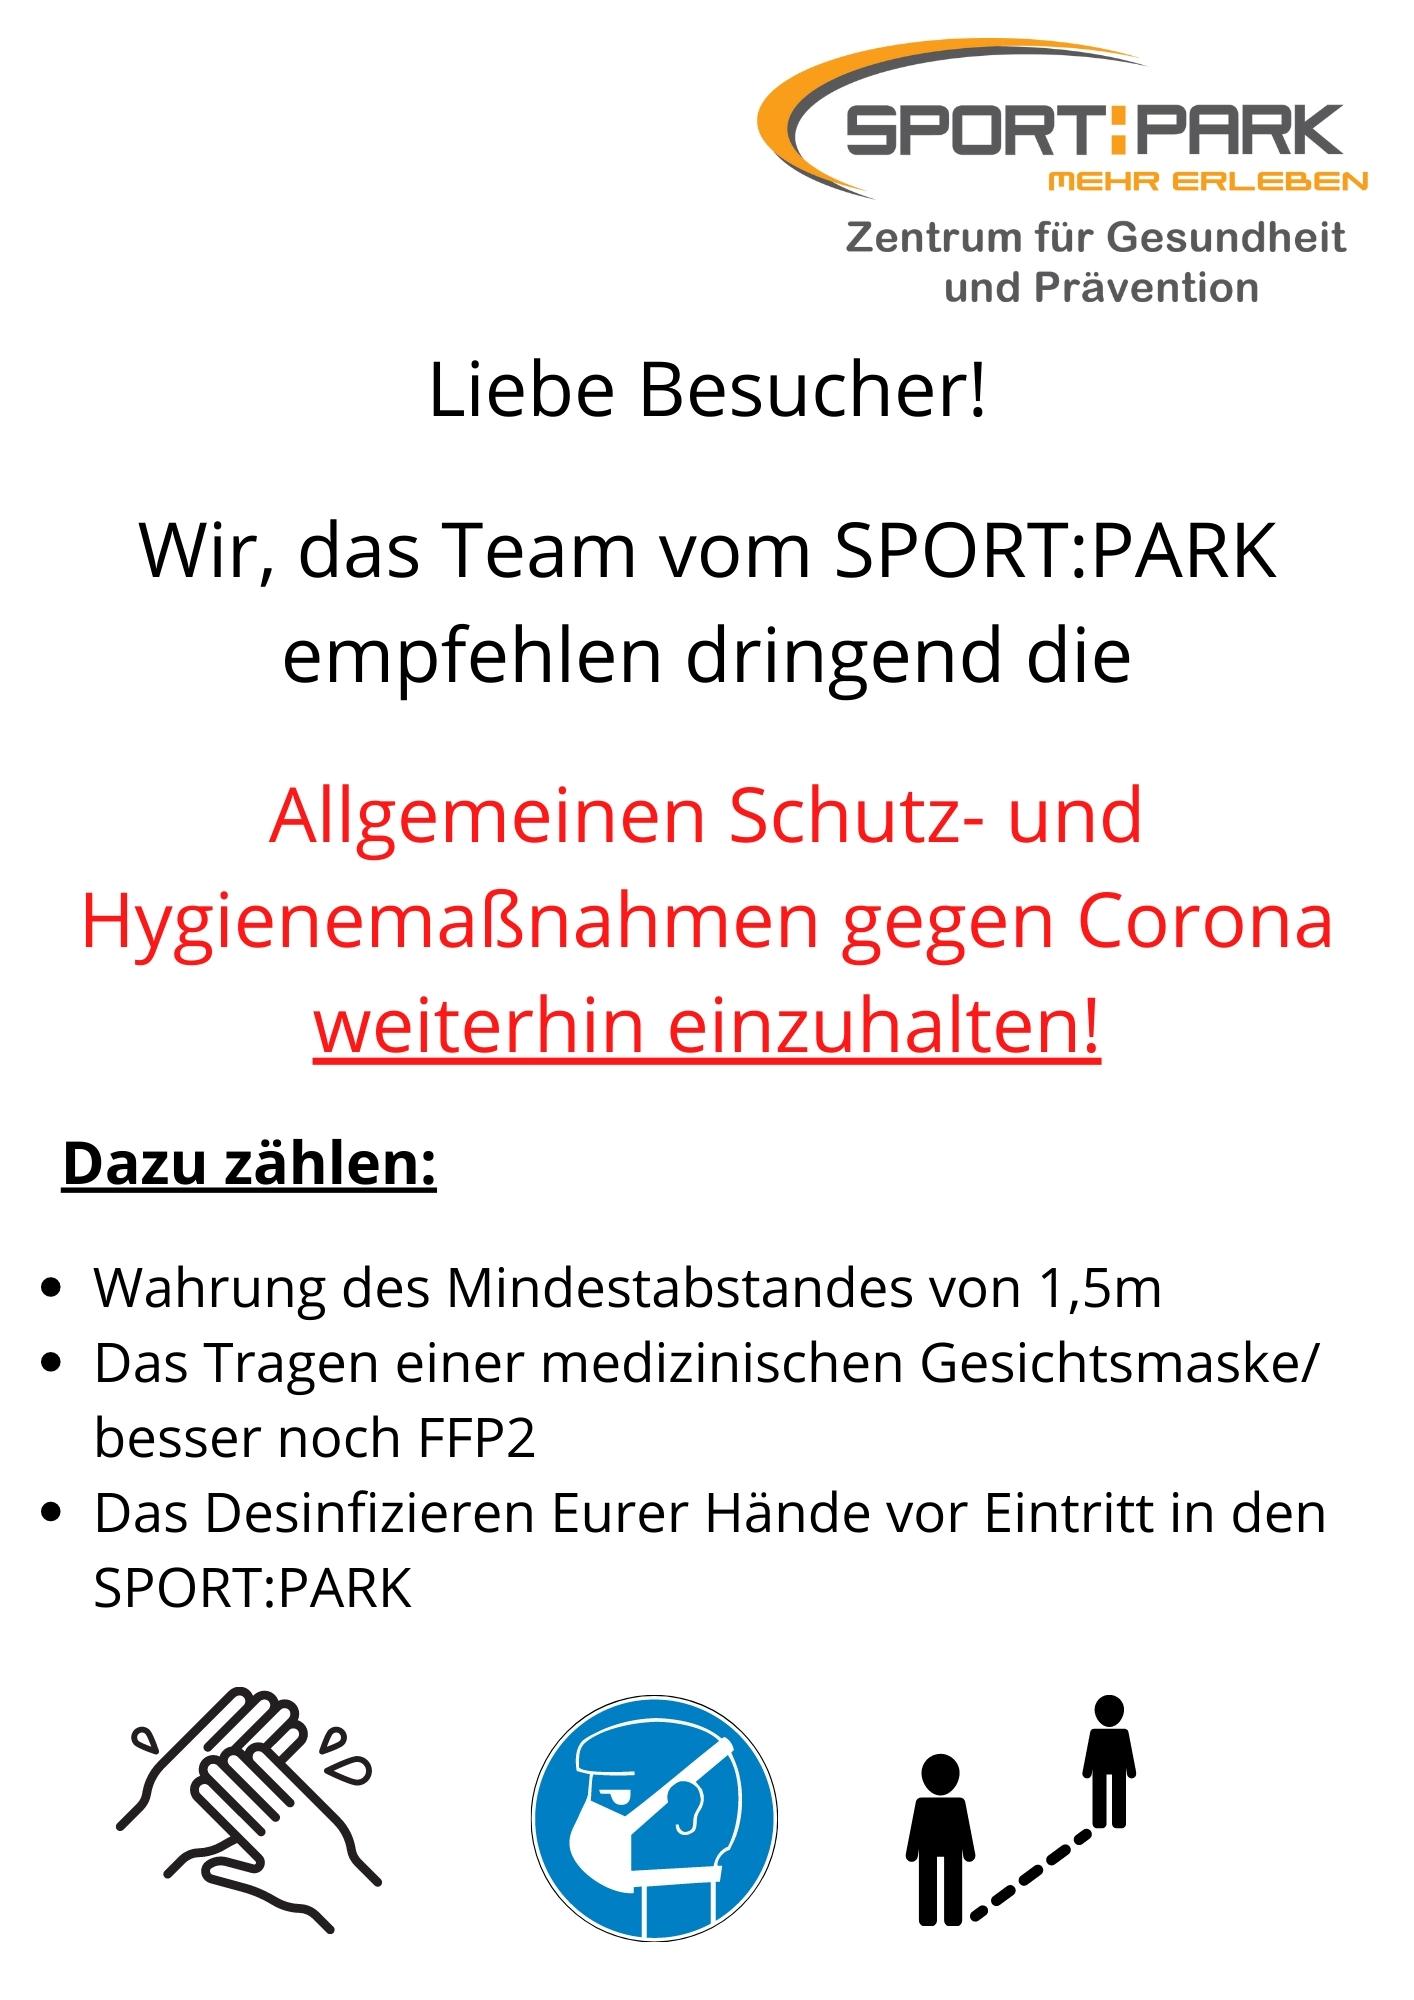 liebe-besucher-wir-das-team-vom-sportpark-empfehlen-dringend-die-allgemeinen-schutz-und-hygienemassnahmen-gegen-corona-weiterhin-eizuhalten-2